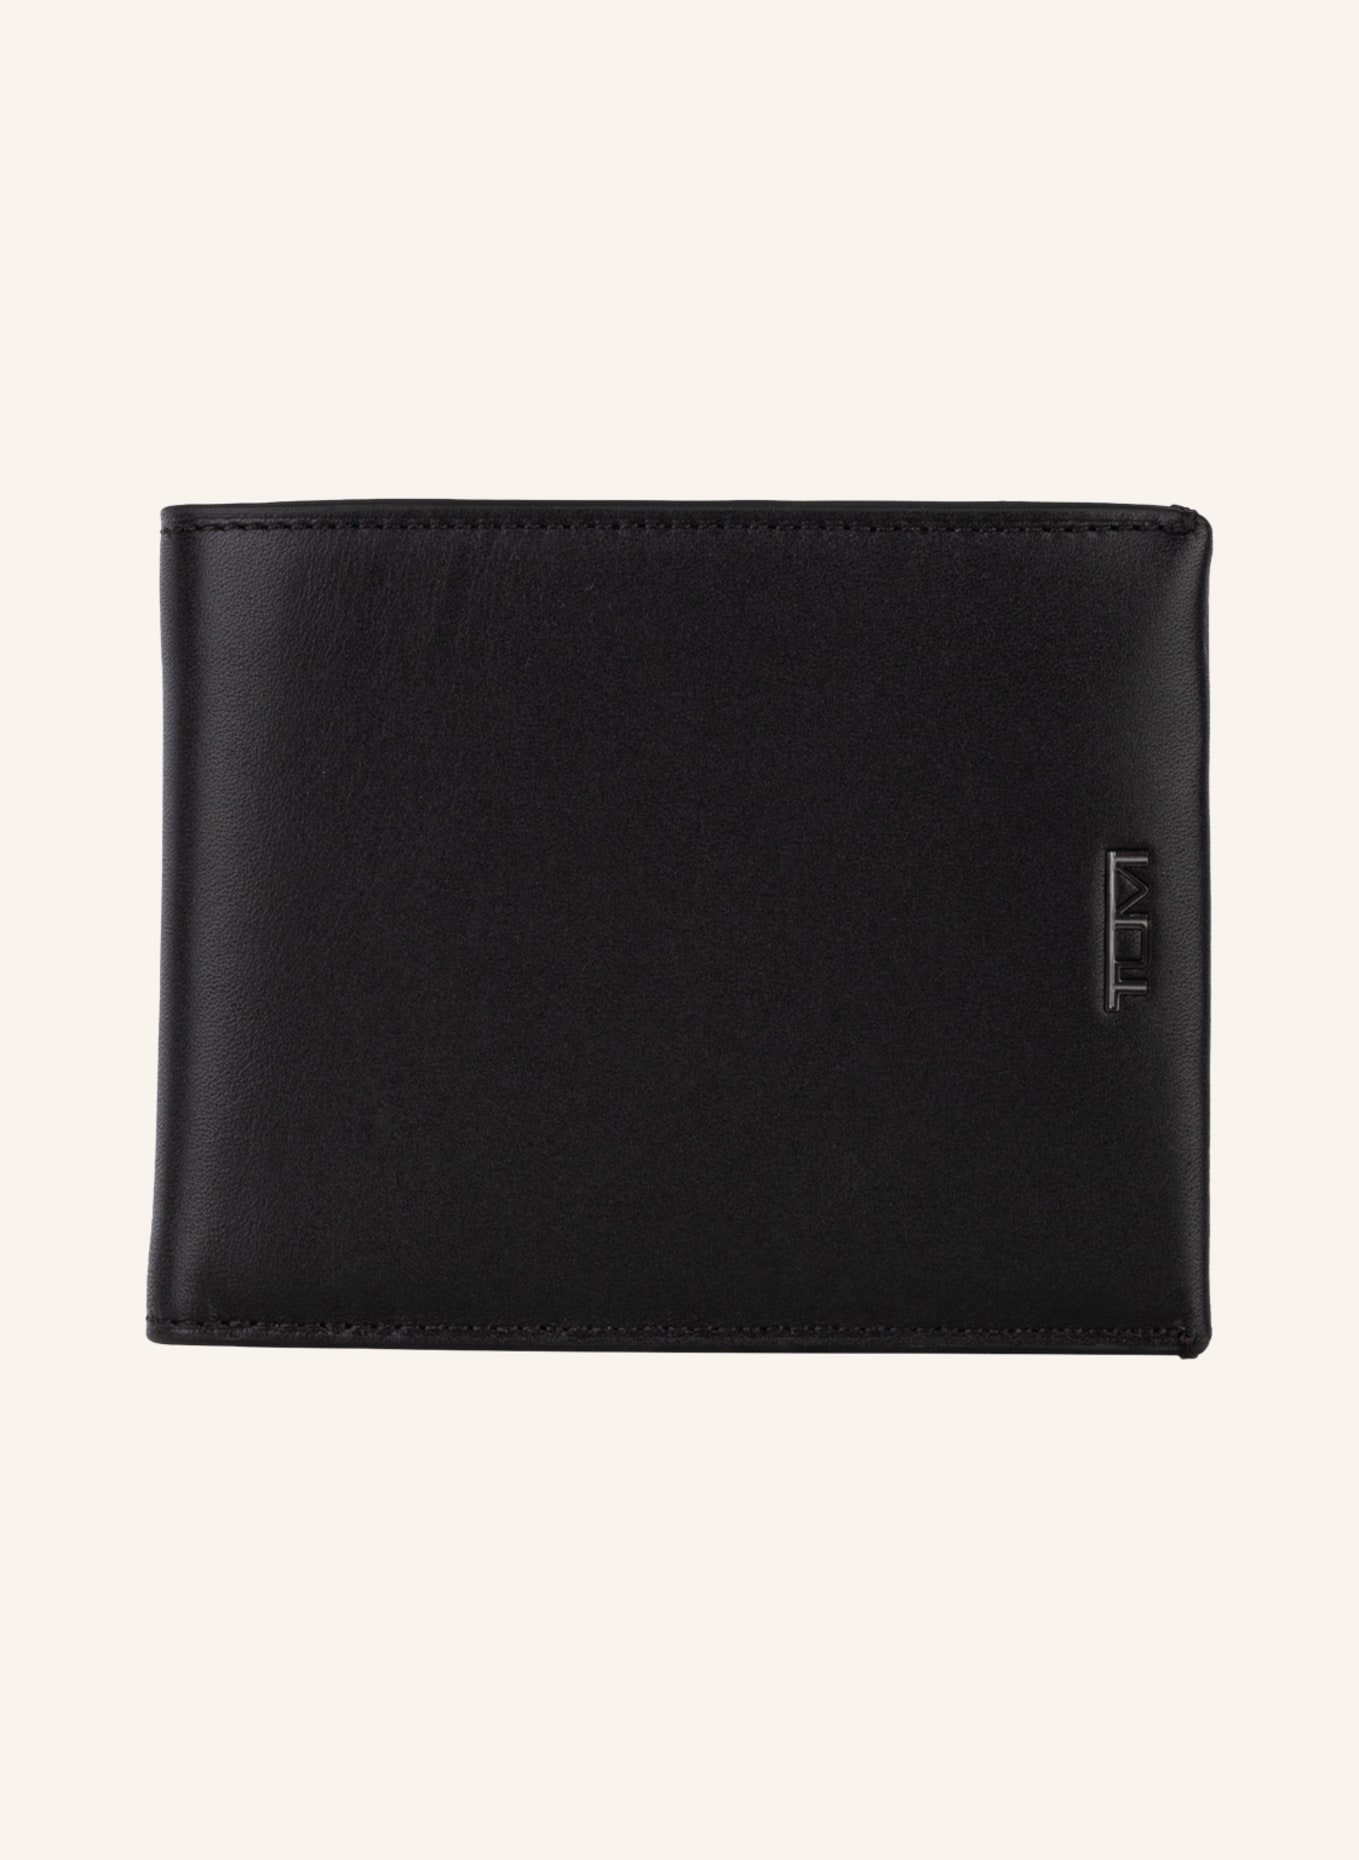 TUMI NASSAU wallet GLOBAL, Color: BLACK (Image 1)